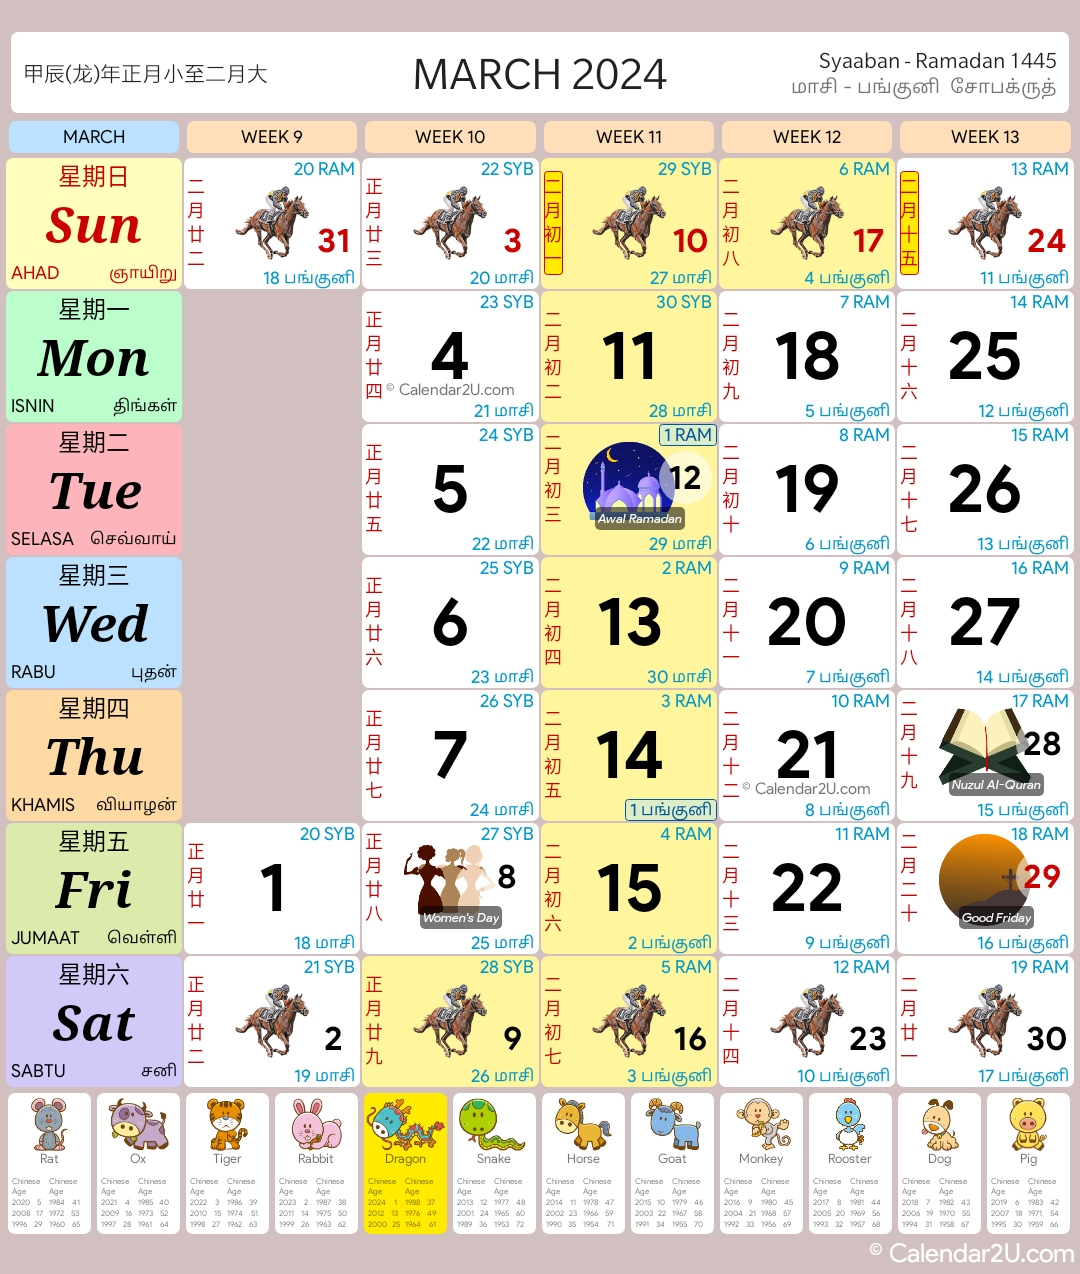 Singapore Calendar Year 2024 - Singapore Calendar | Printable Calendar 2024 Singapore